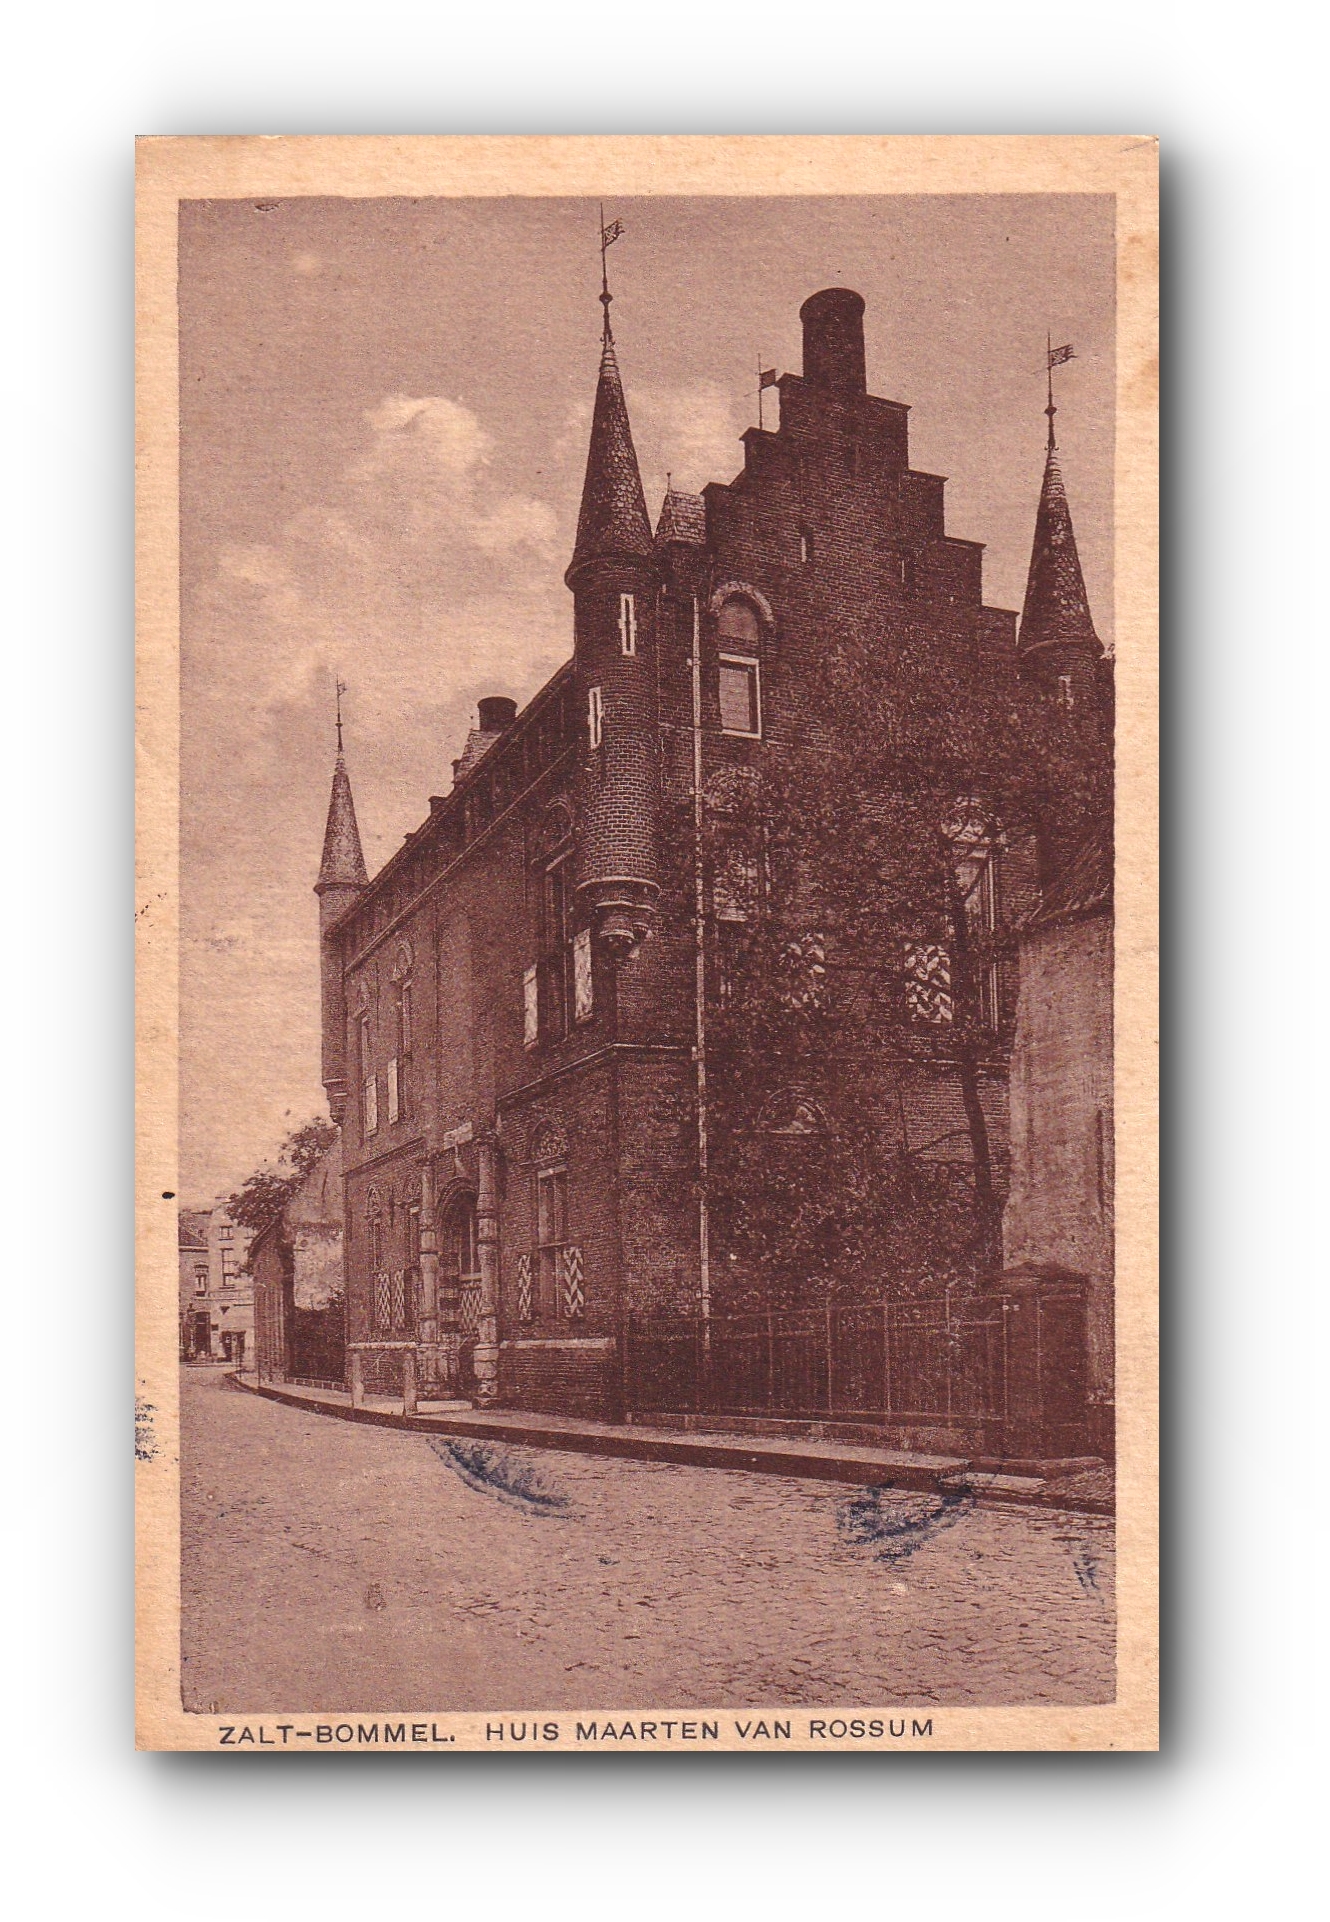 - Huis Maarten van Rossum - ZALT - BOMMEL - 29.07.1906 -